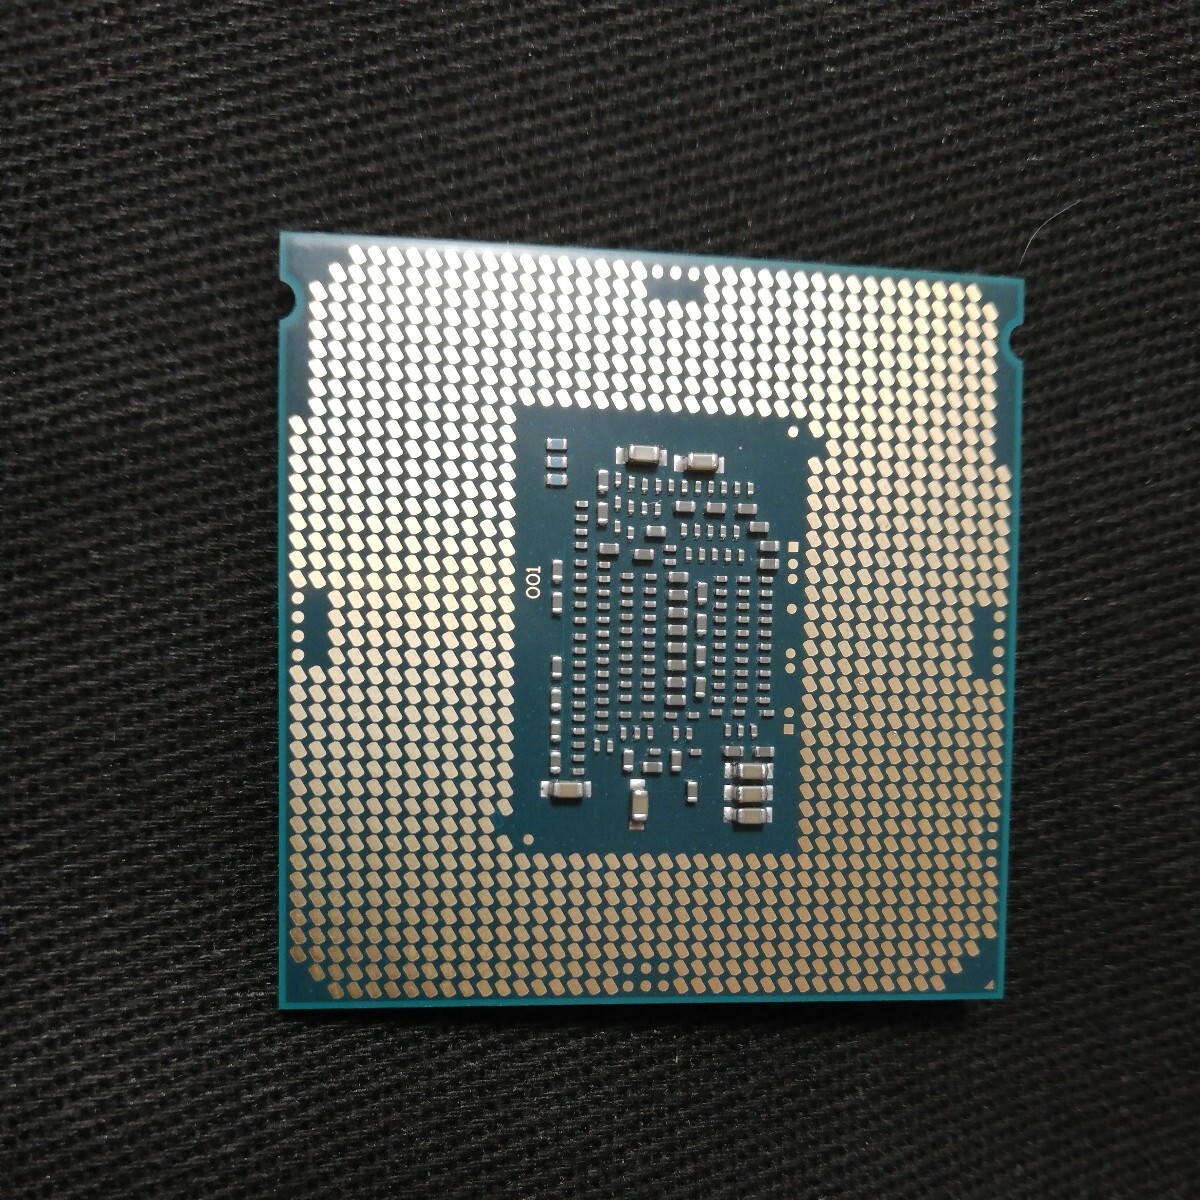 インテルCore i7 6700k付属品なしの画像2